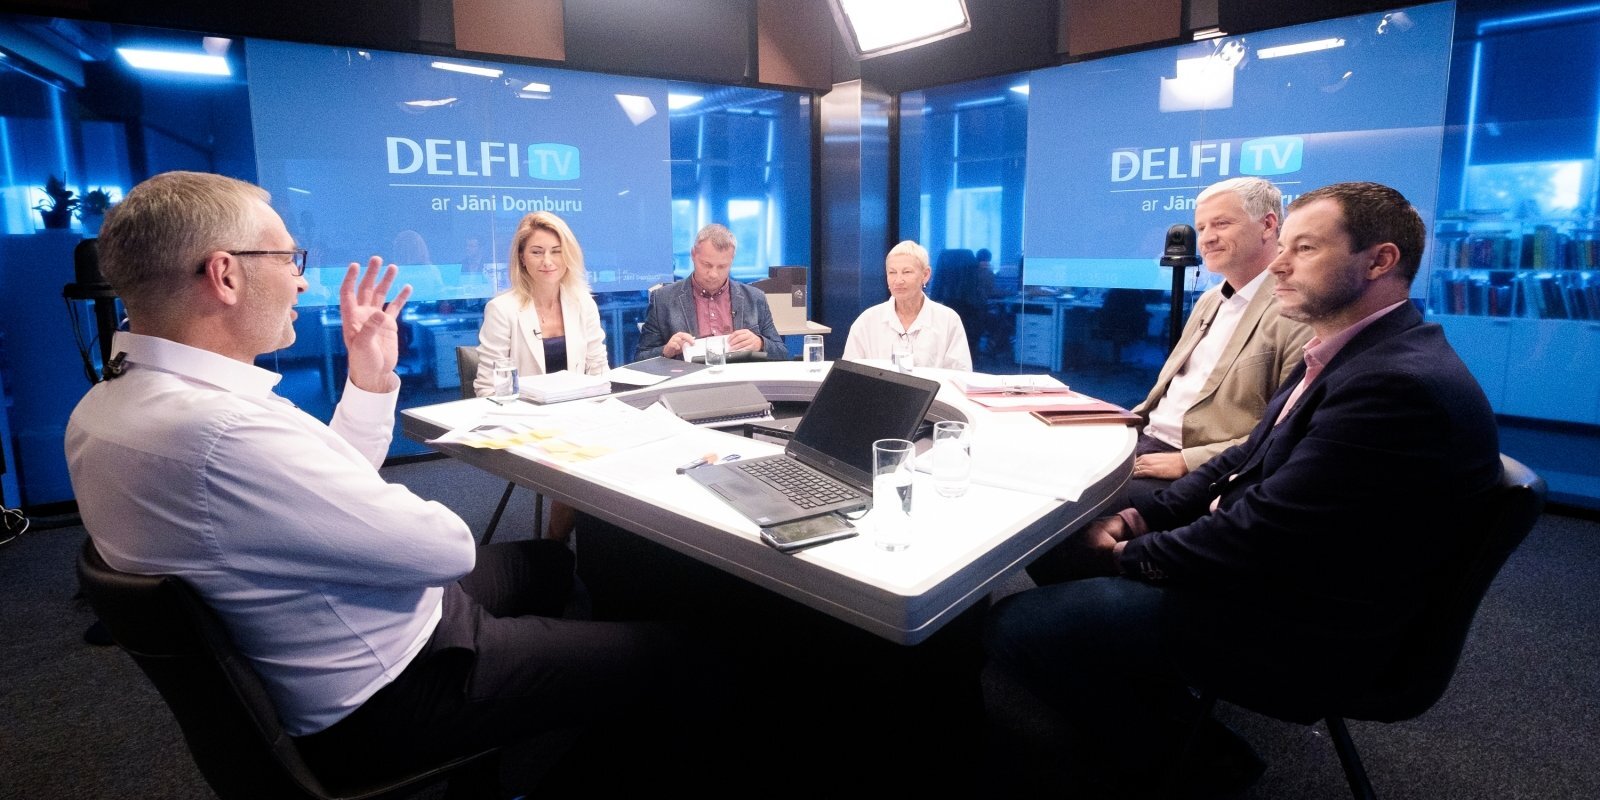 'Delfi TV ar Jāni Domburu' atbild JRT rekonstrukcijas projekta autori un būvnieki. Diskusijas teksts.